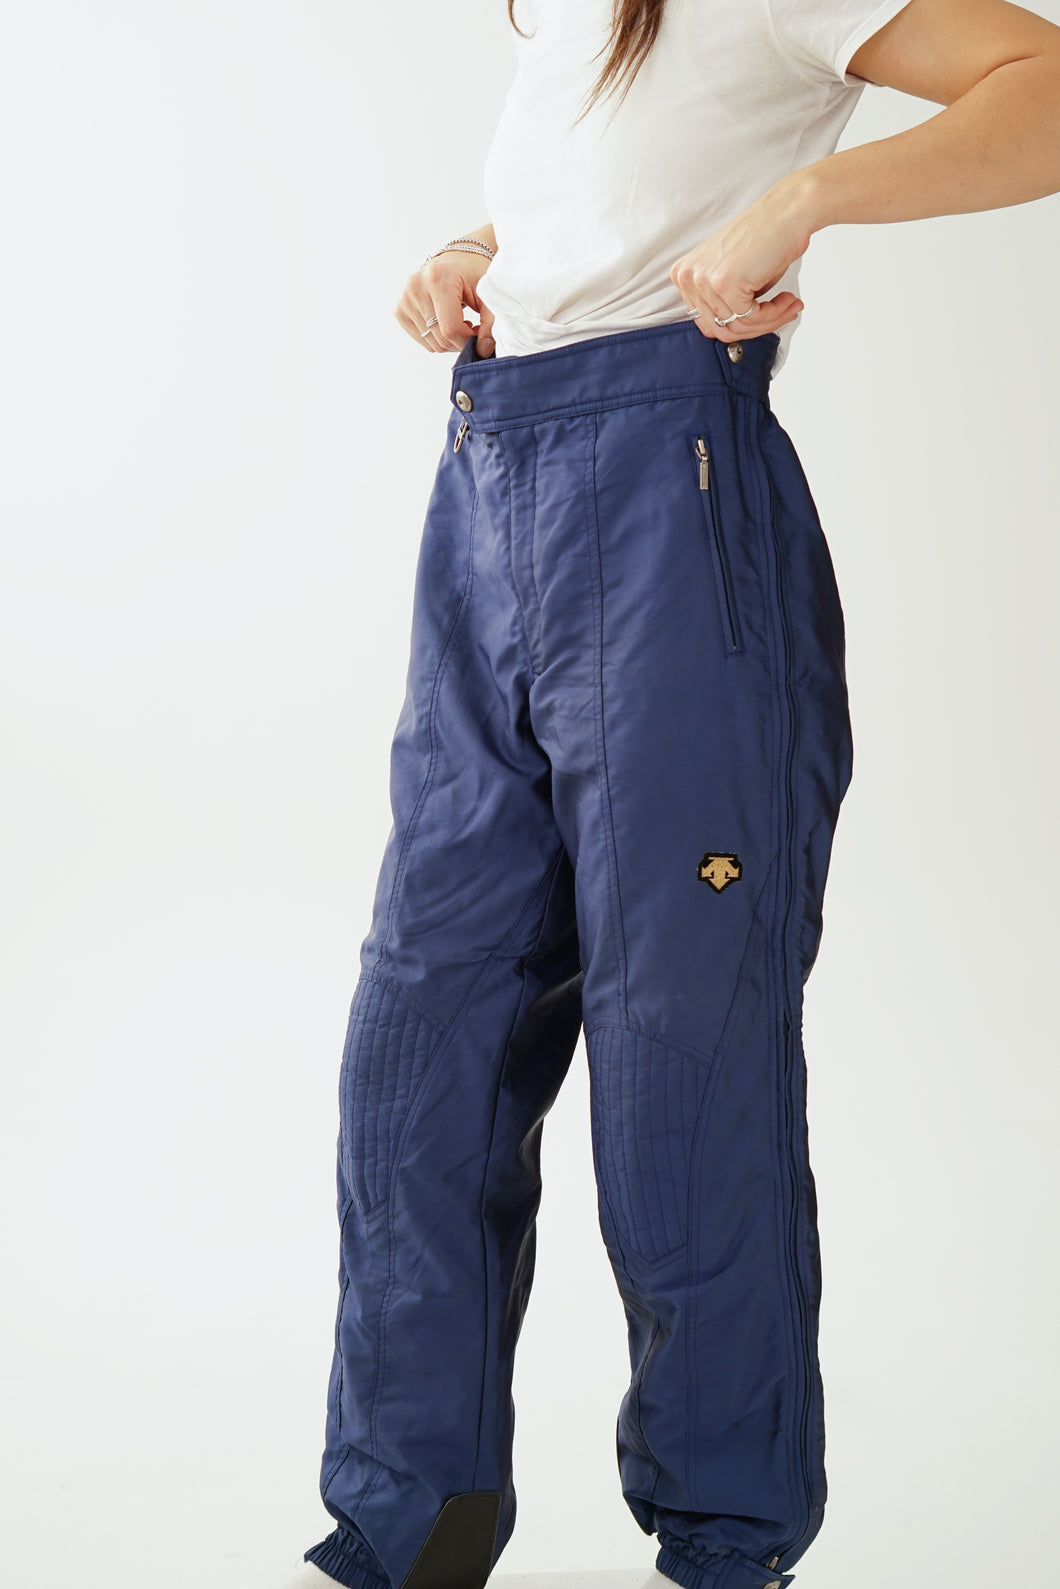 Pantalon de neige vintage Descente bleu métallique pour homme taille 36 (L)